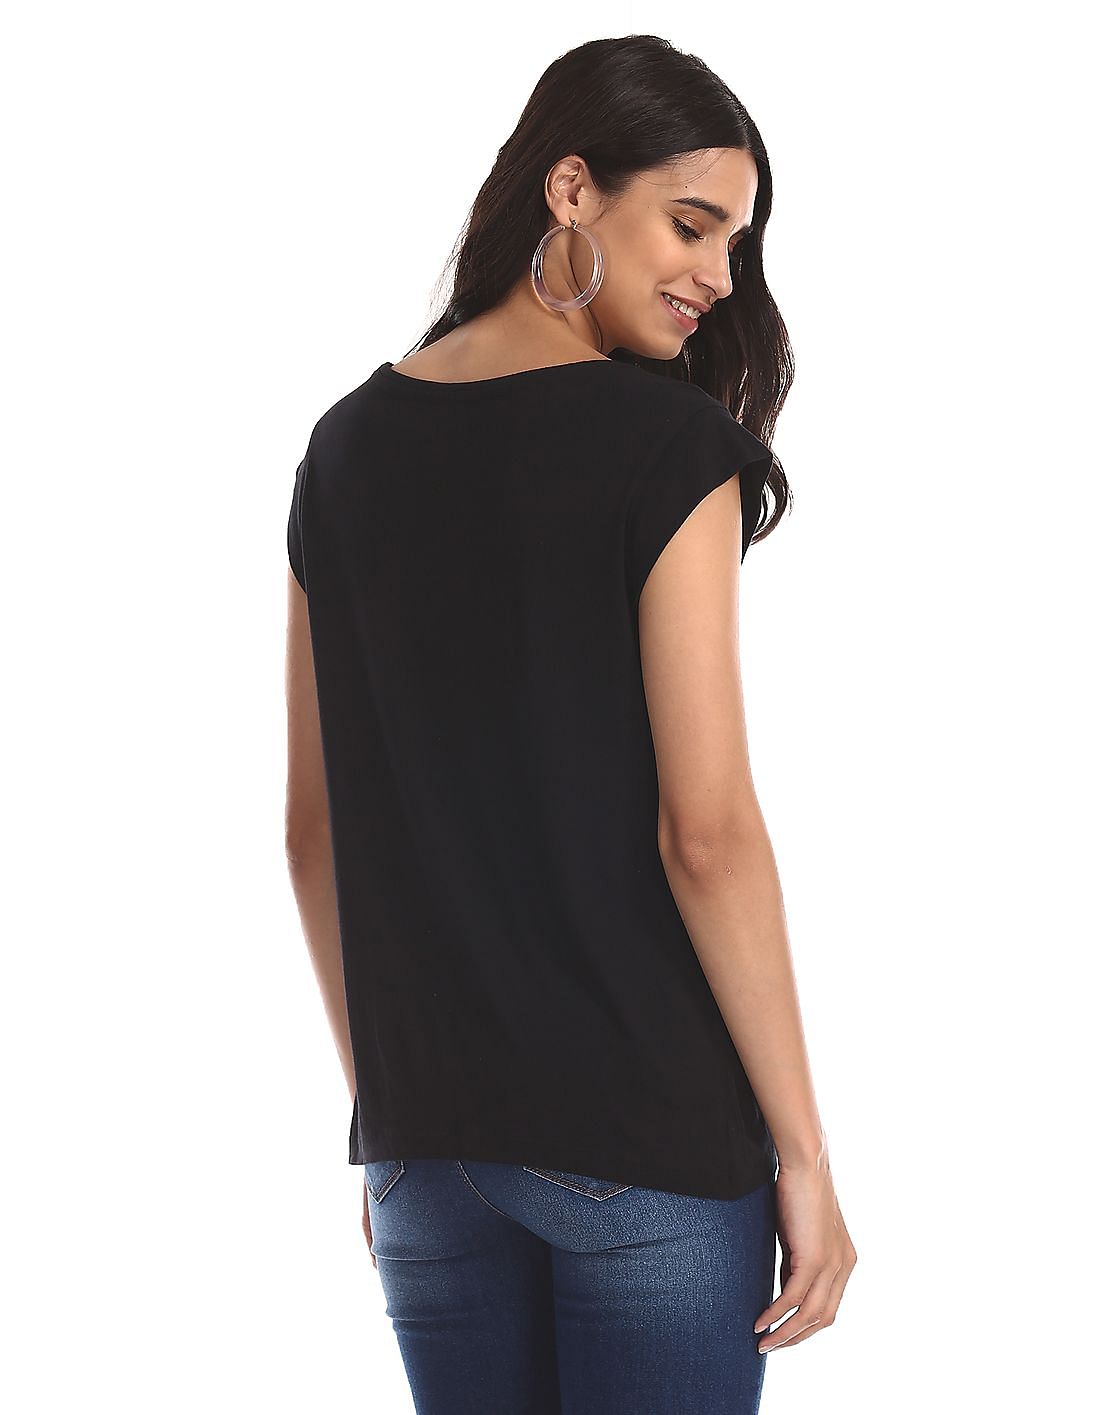 Buy Fun Logo LV Women T Shirt Black 2X-Large Online at desertcartINDIA